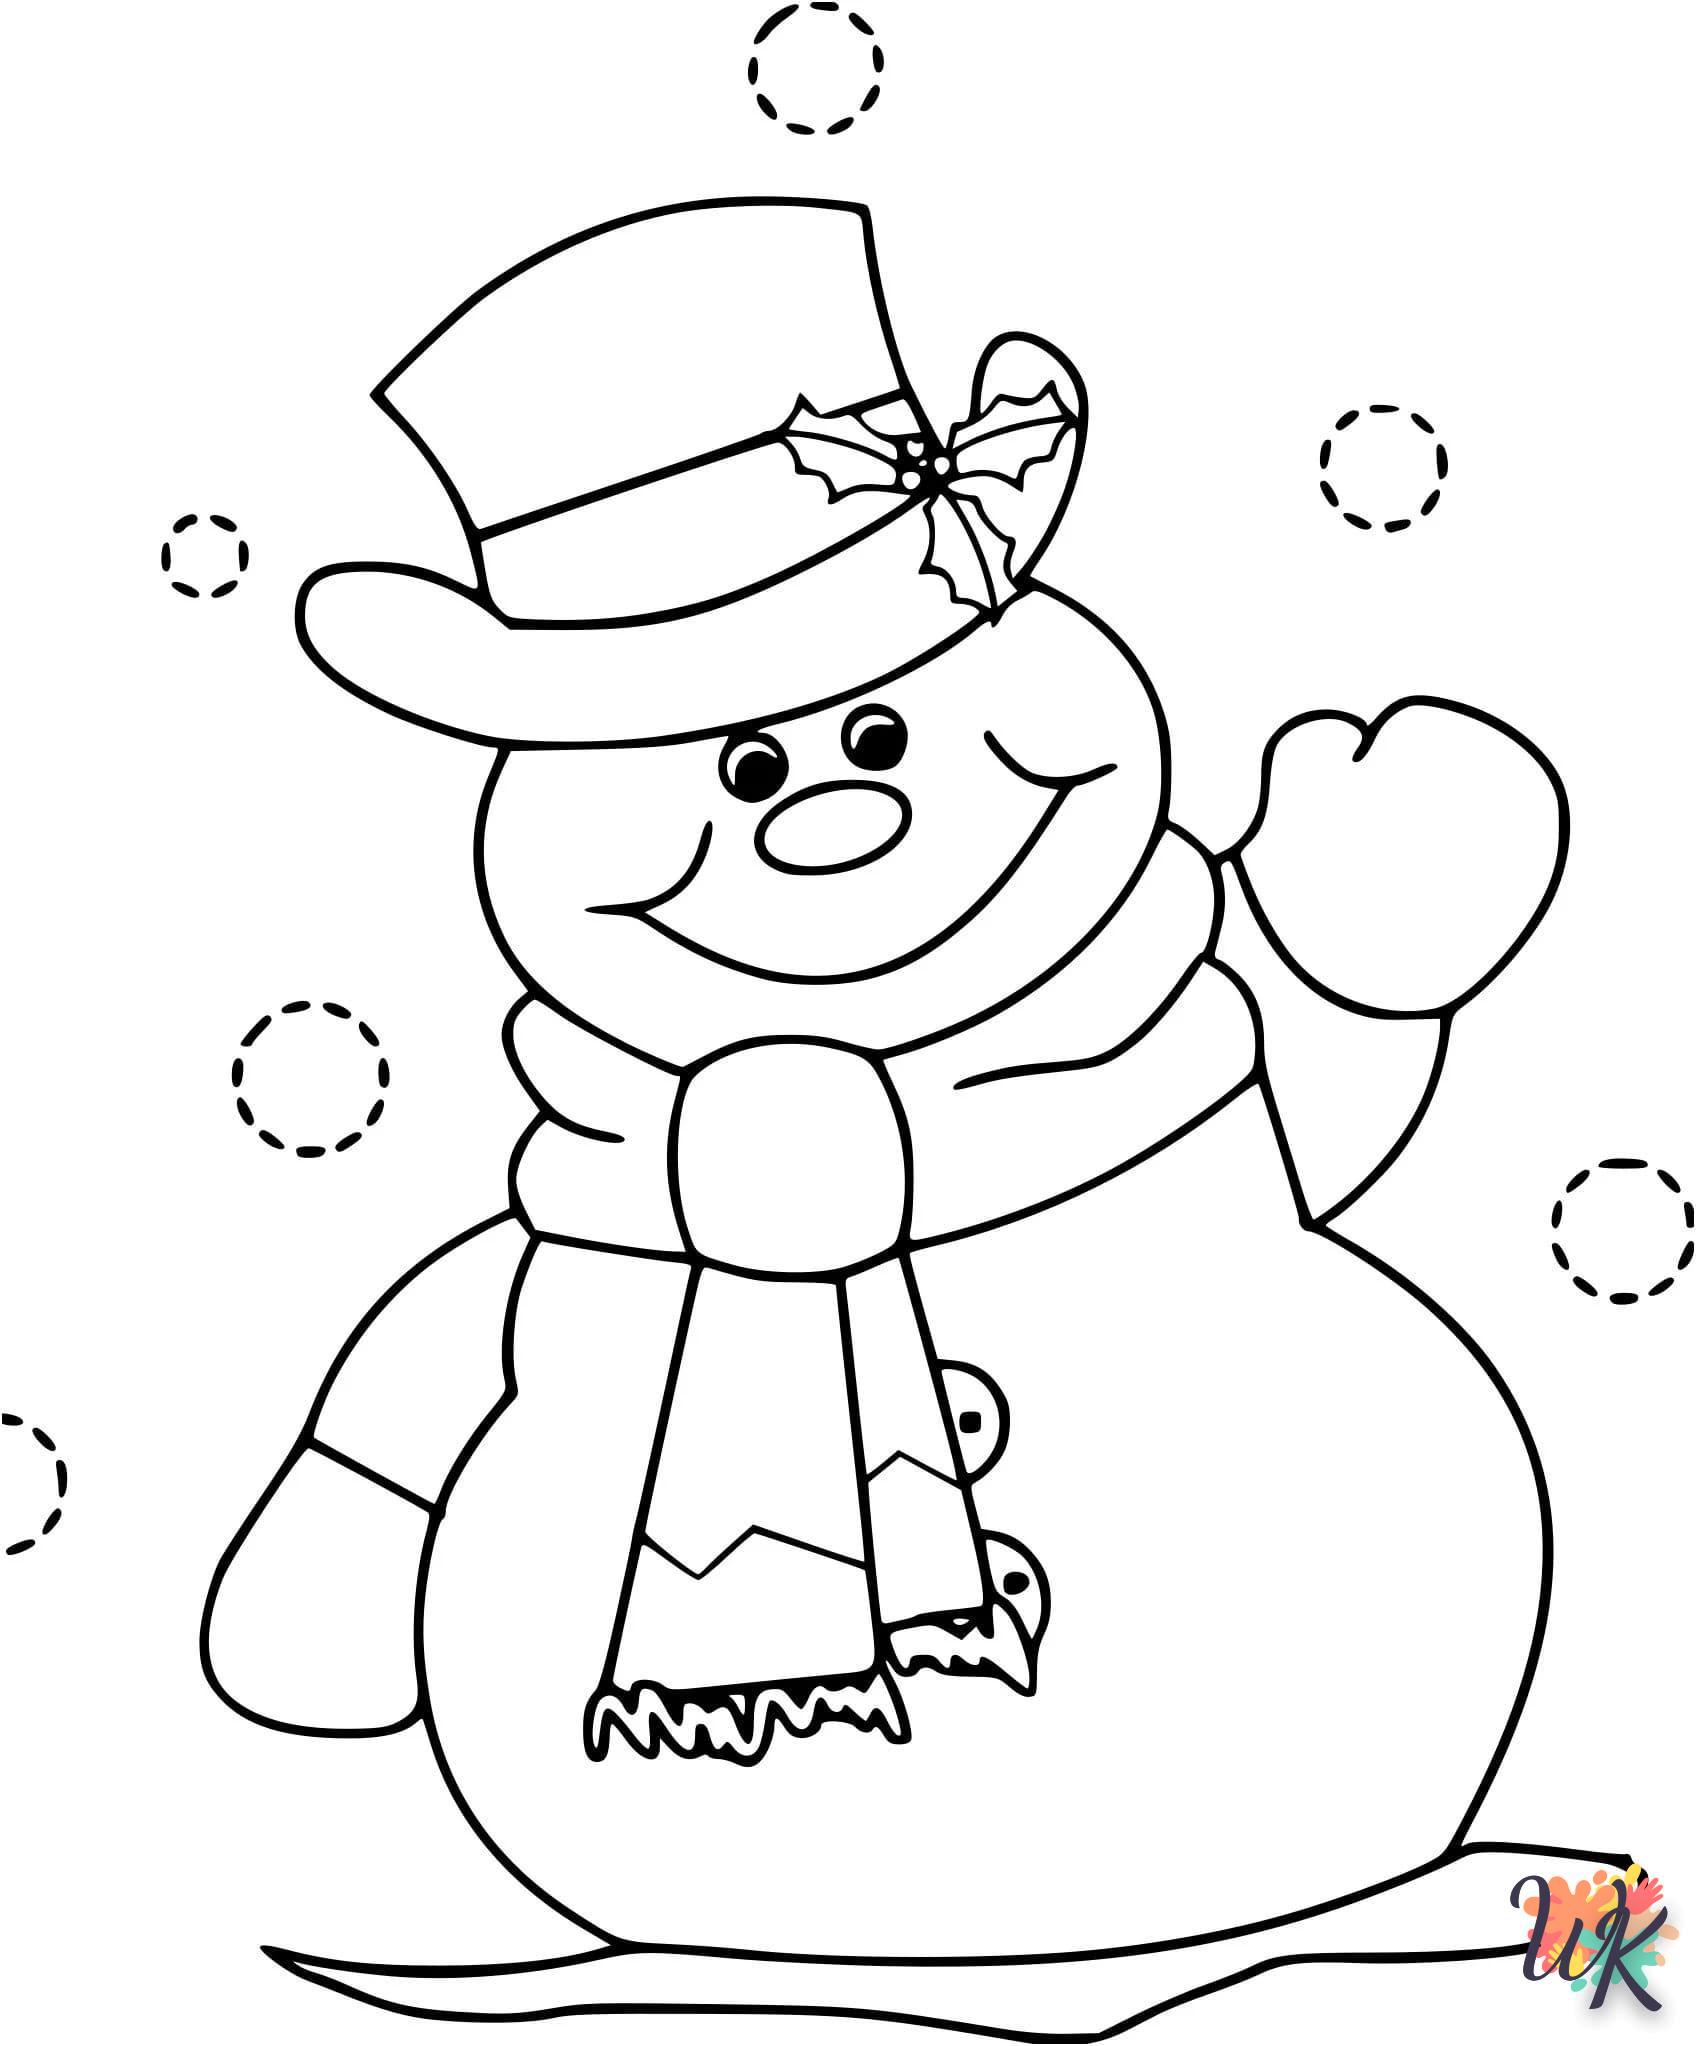 Dibujos para Colorear Muneco de nieve 18